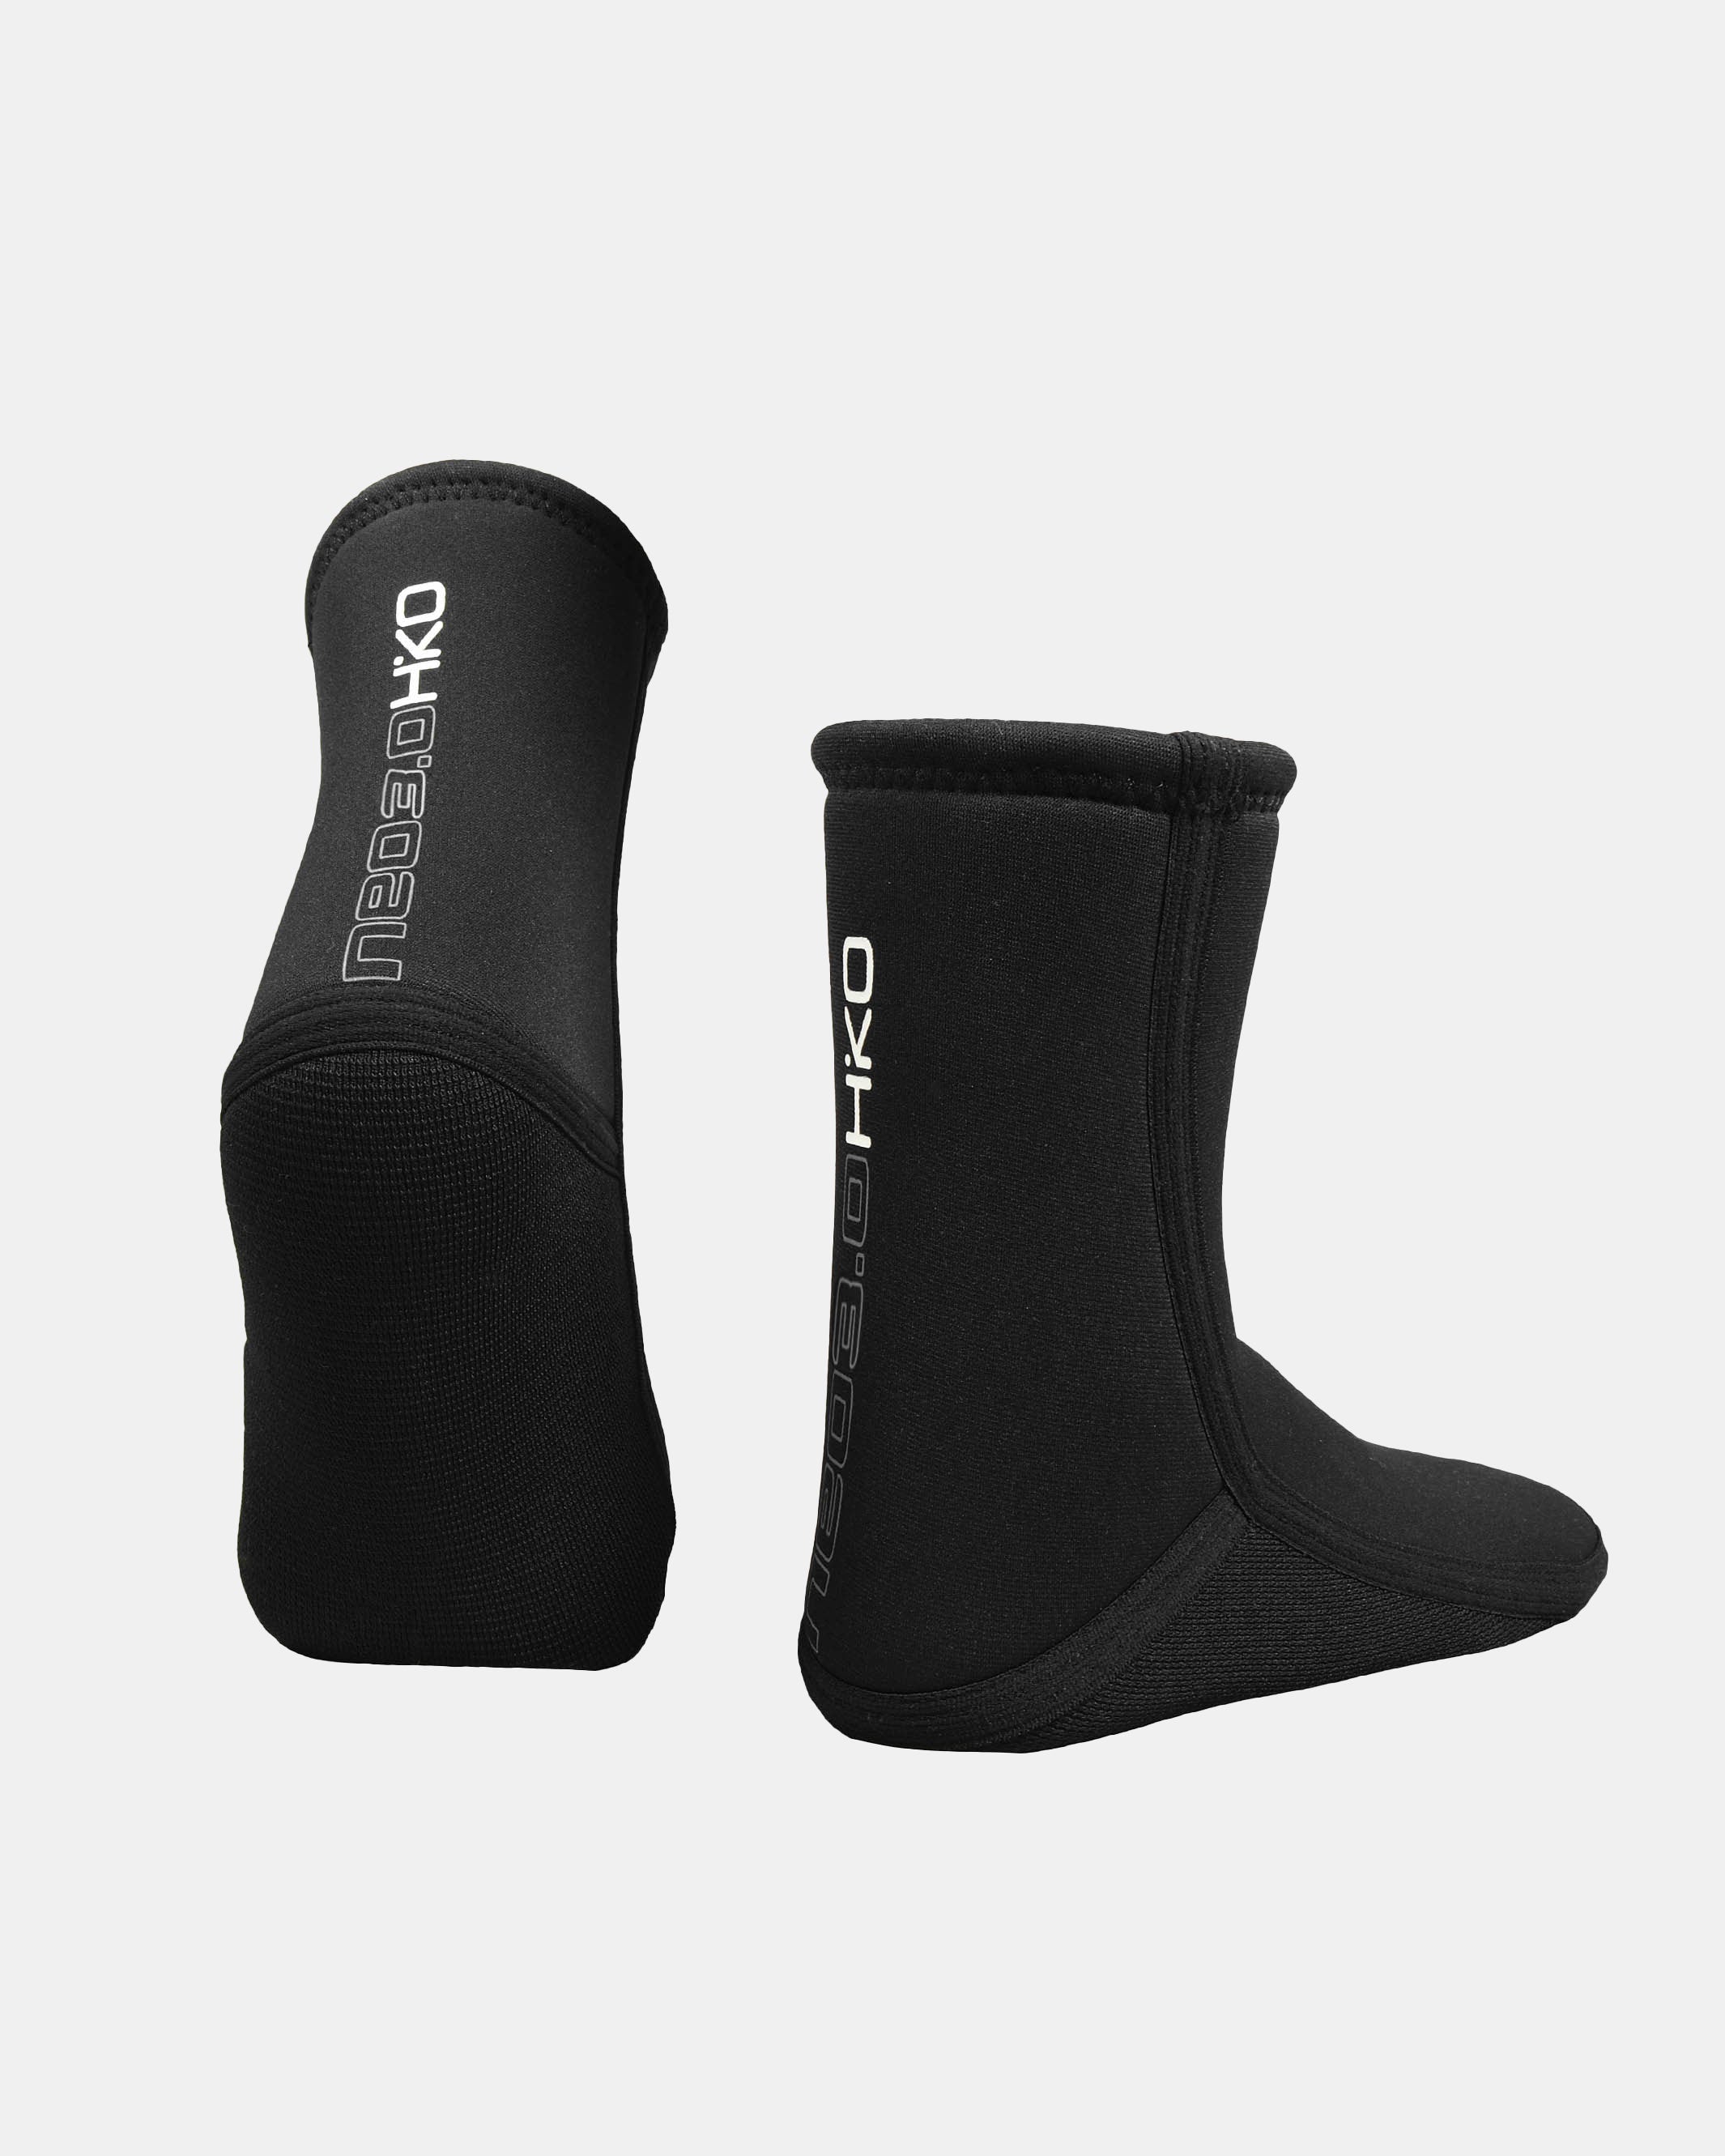 NEO 3.0 Socks